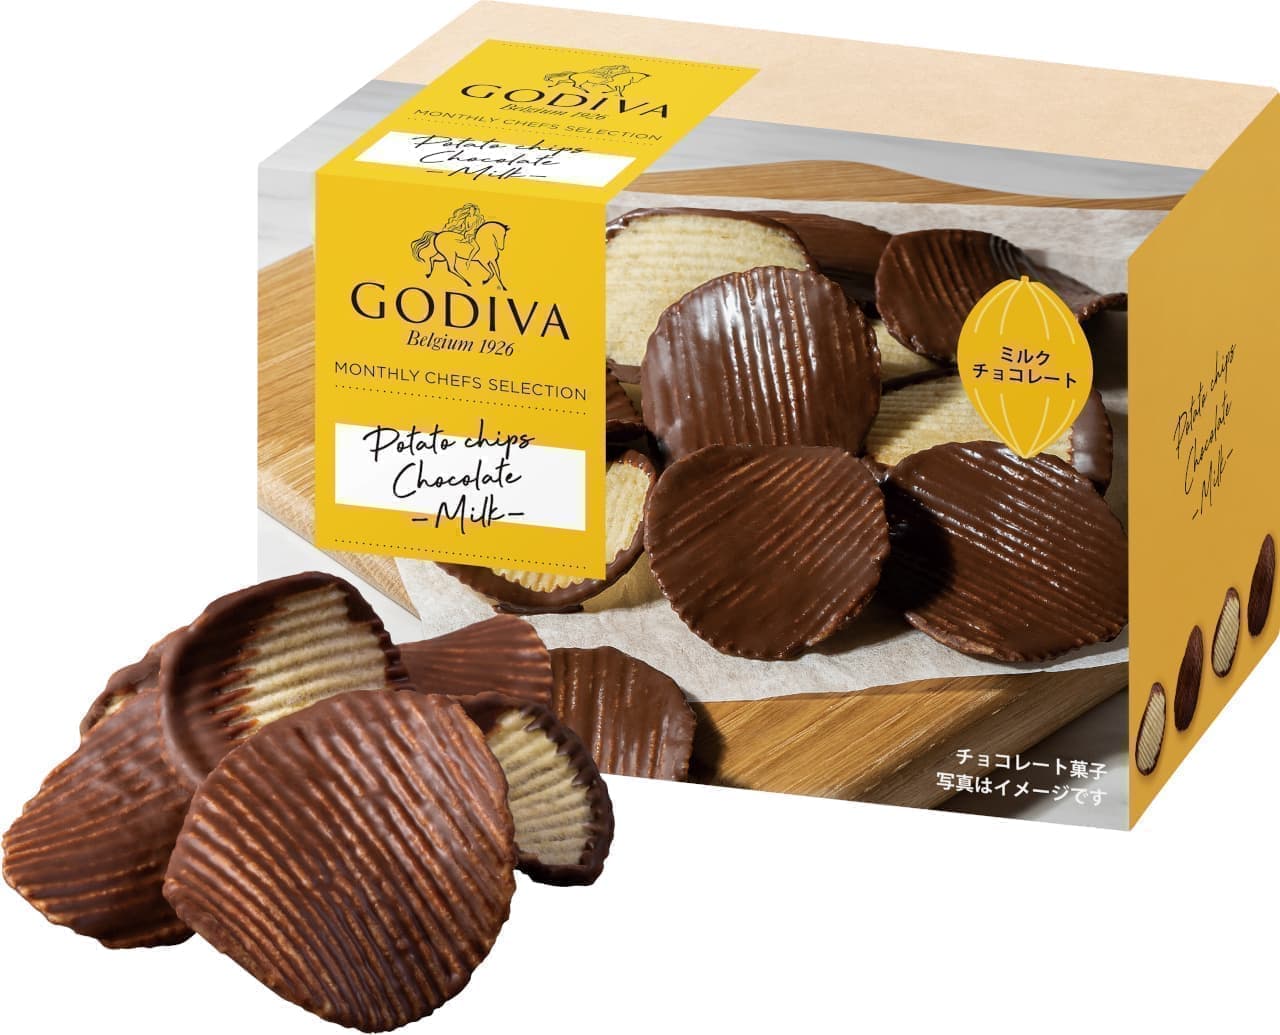 Godiva "Potato Chips Chocolate Milk" package